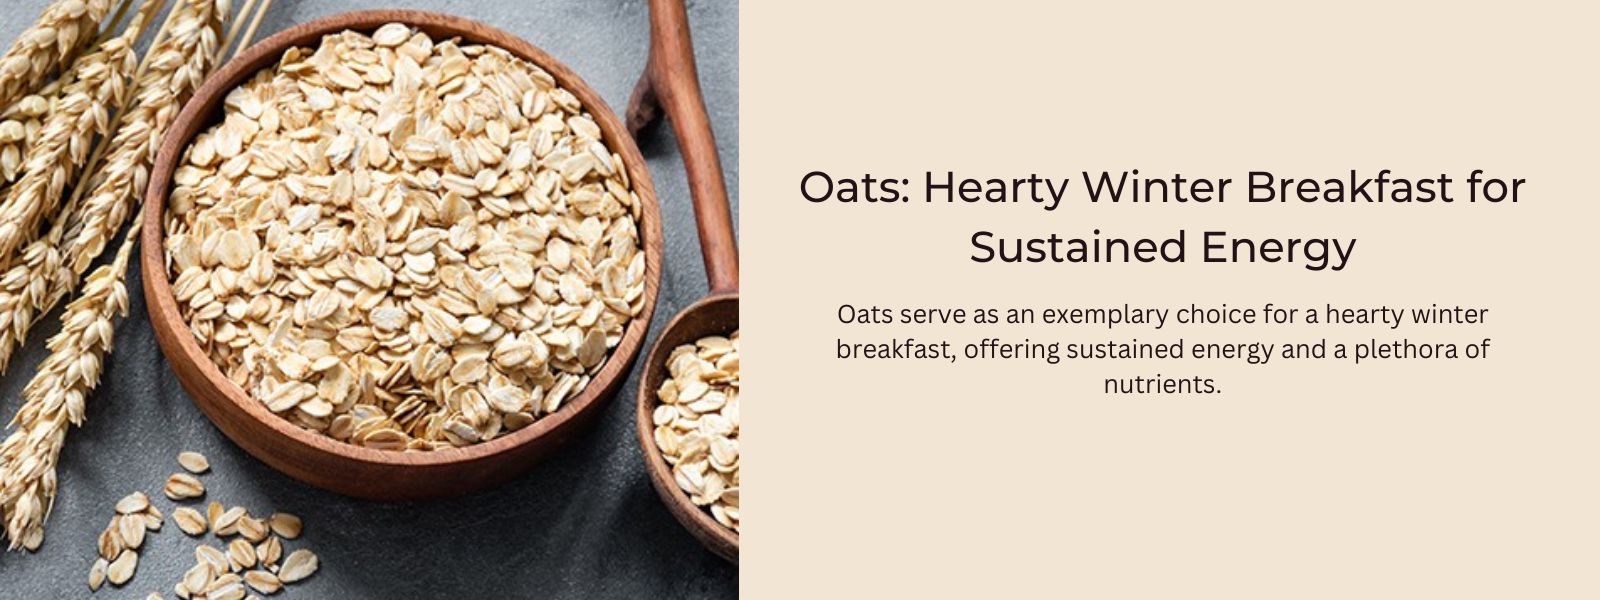 Oats: Hearty Winter Breakfast for Sustained Energy